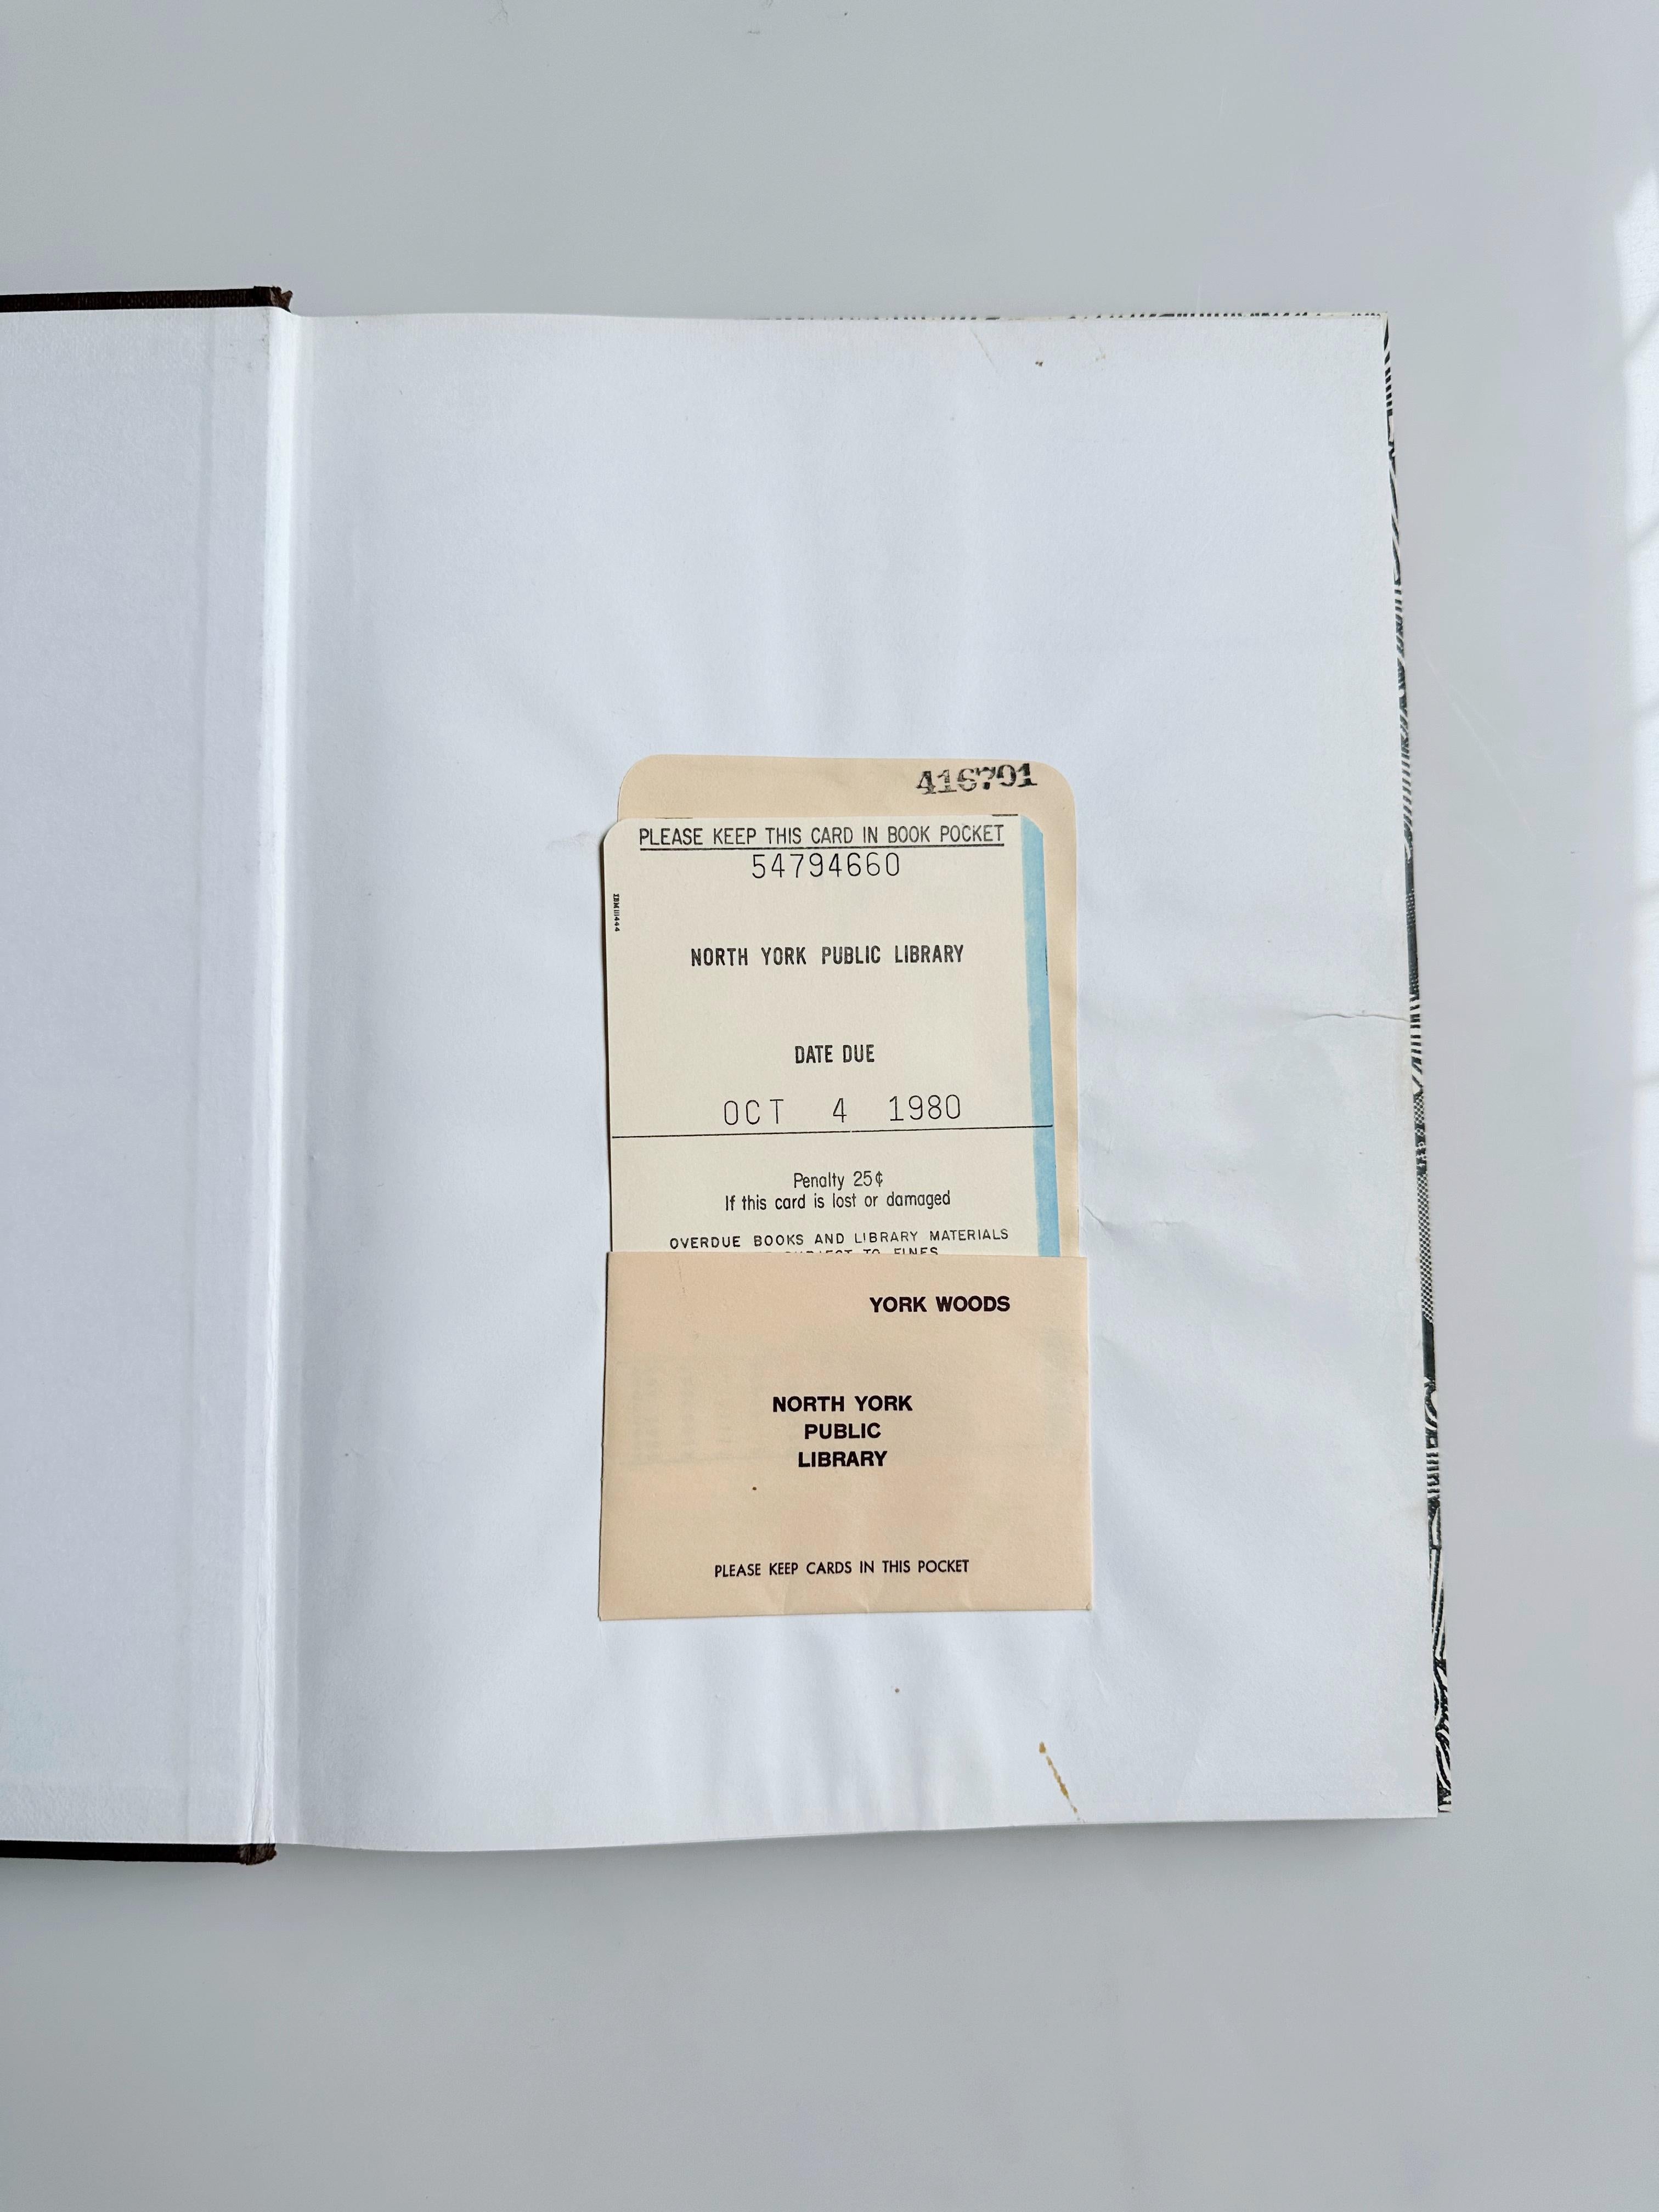 Dekorative Kunst in modernen Innenräumen 1973-1974

von Studio Vista

Fester Einband, Schutzumschlag

//

9 x 11.5
158 Seiten

// u2028

*Sehr guter Zustand, nur geringe Gebrauchsspuren. Bibliotheksbuch.